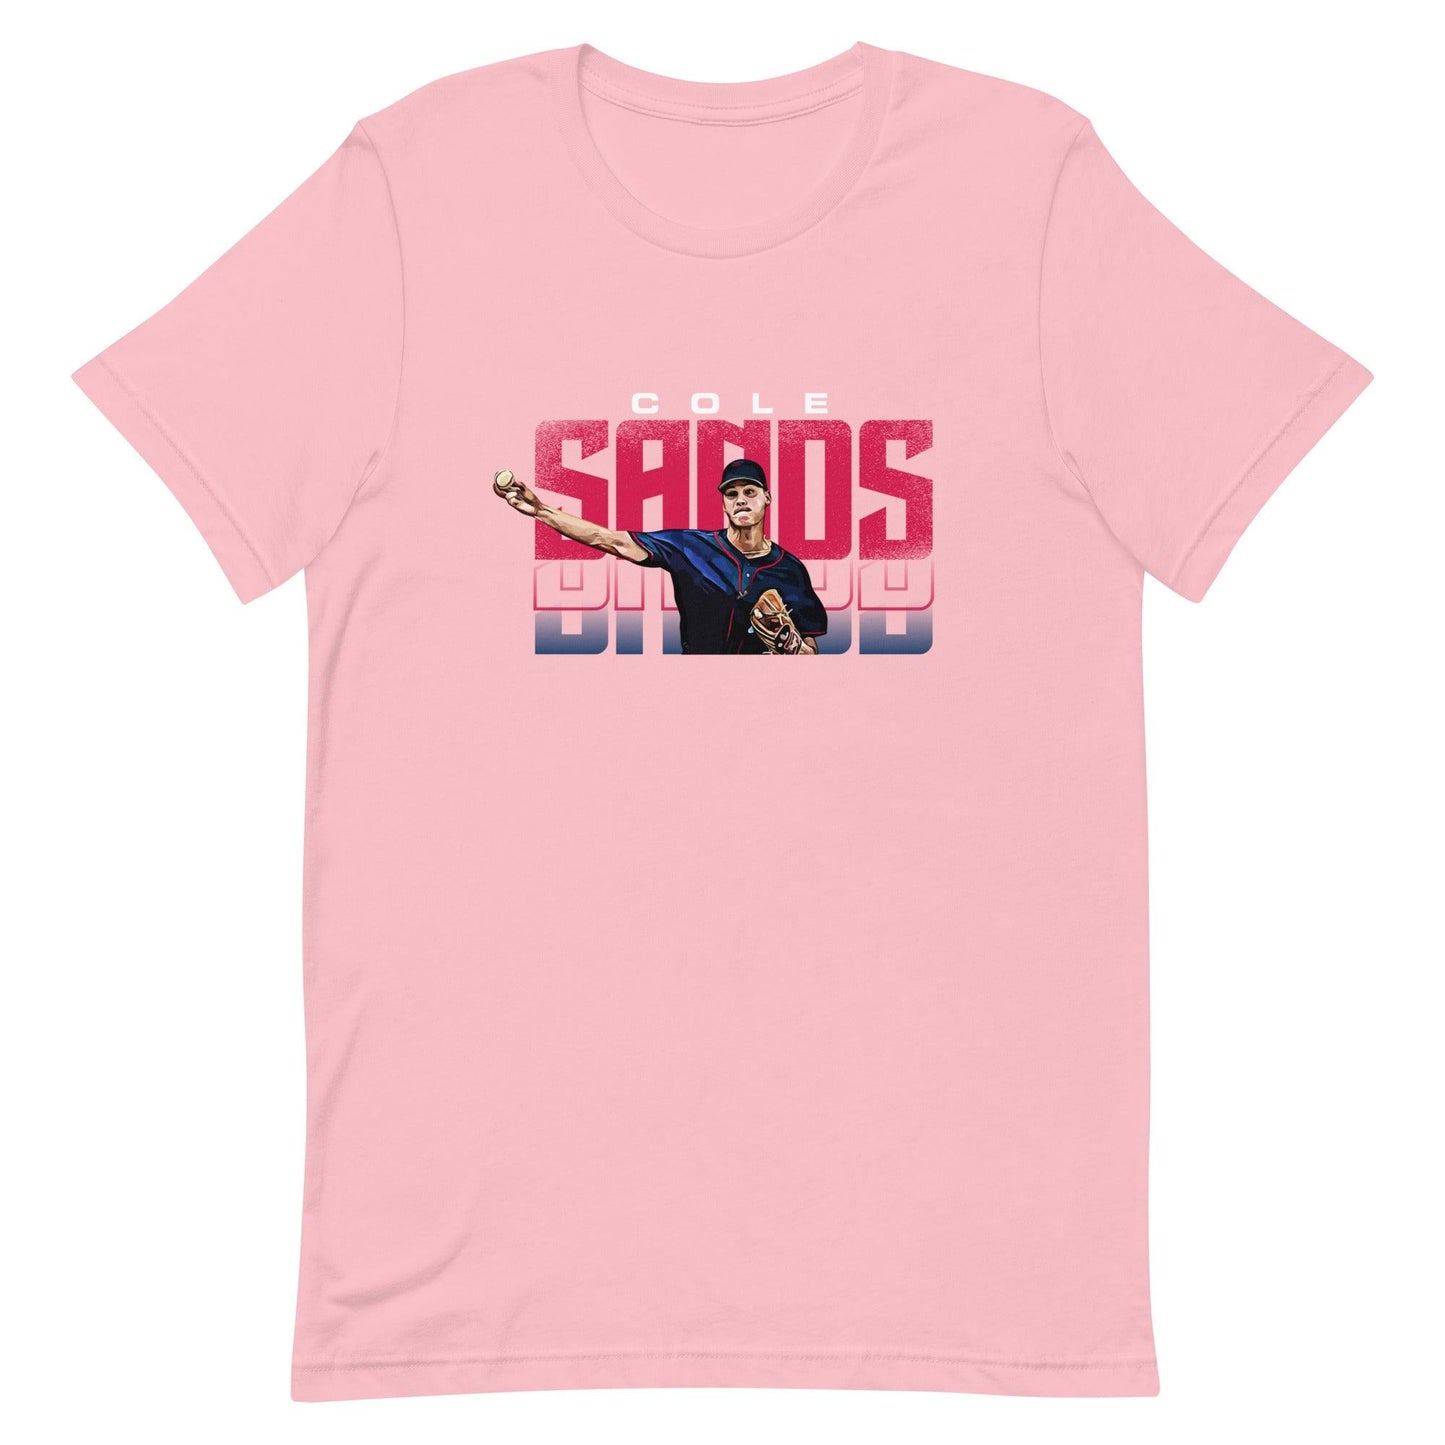 Cole sands “Essential” t-shirt - Fan Arch